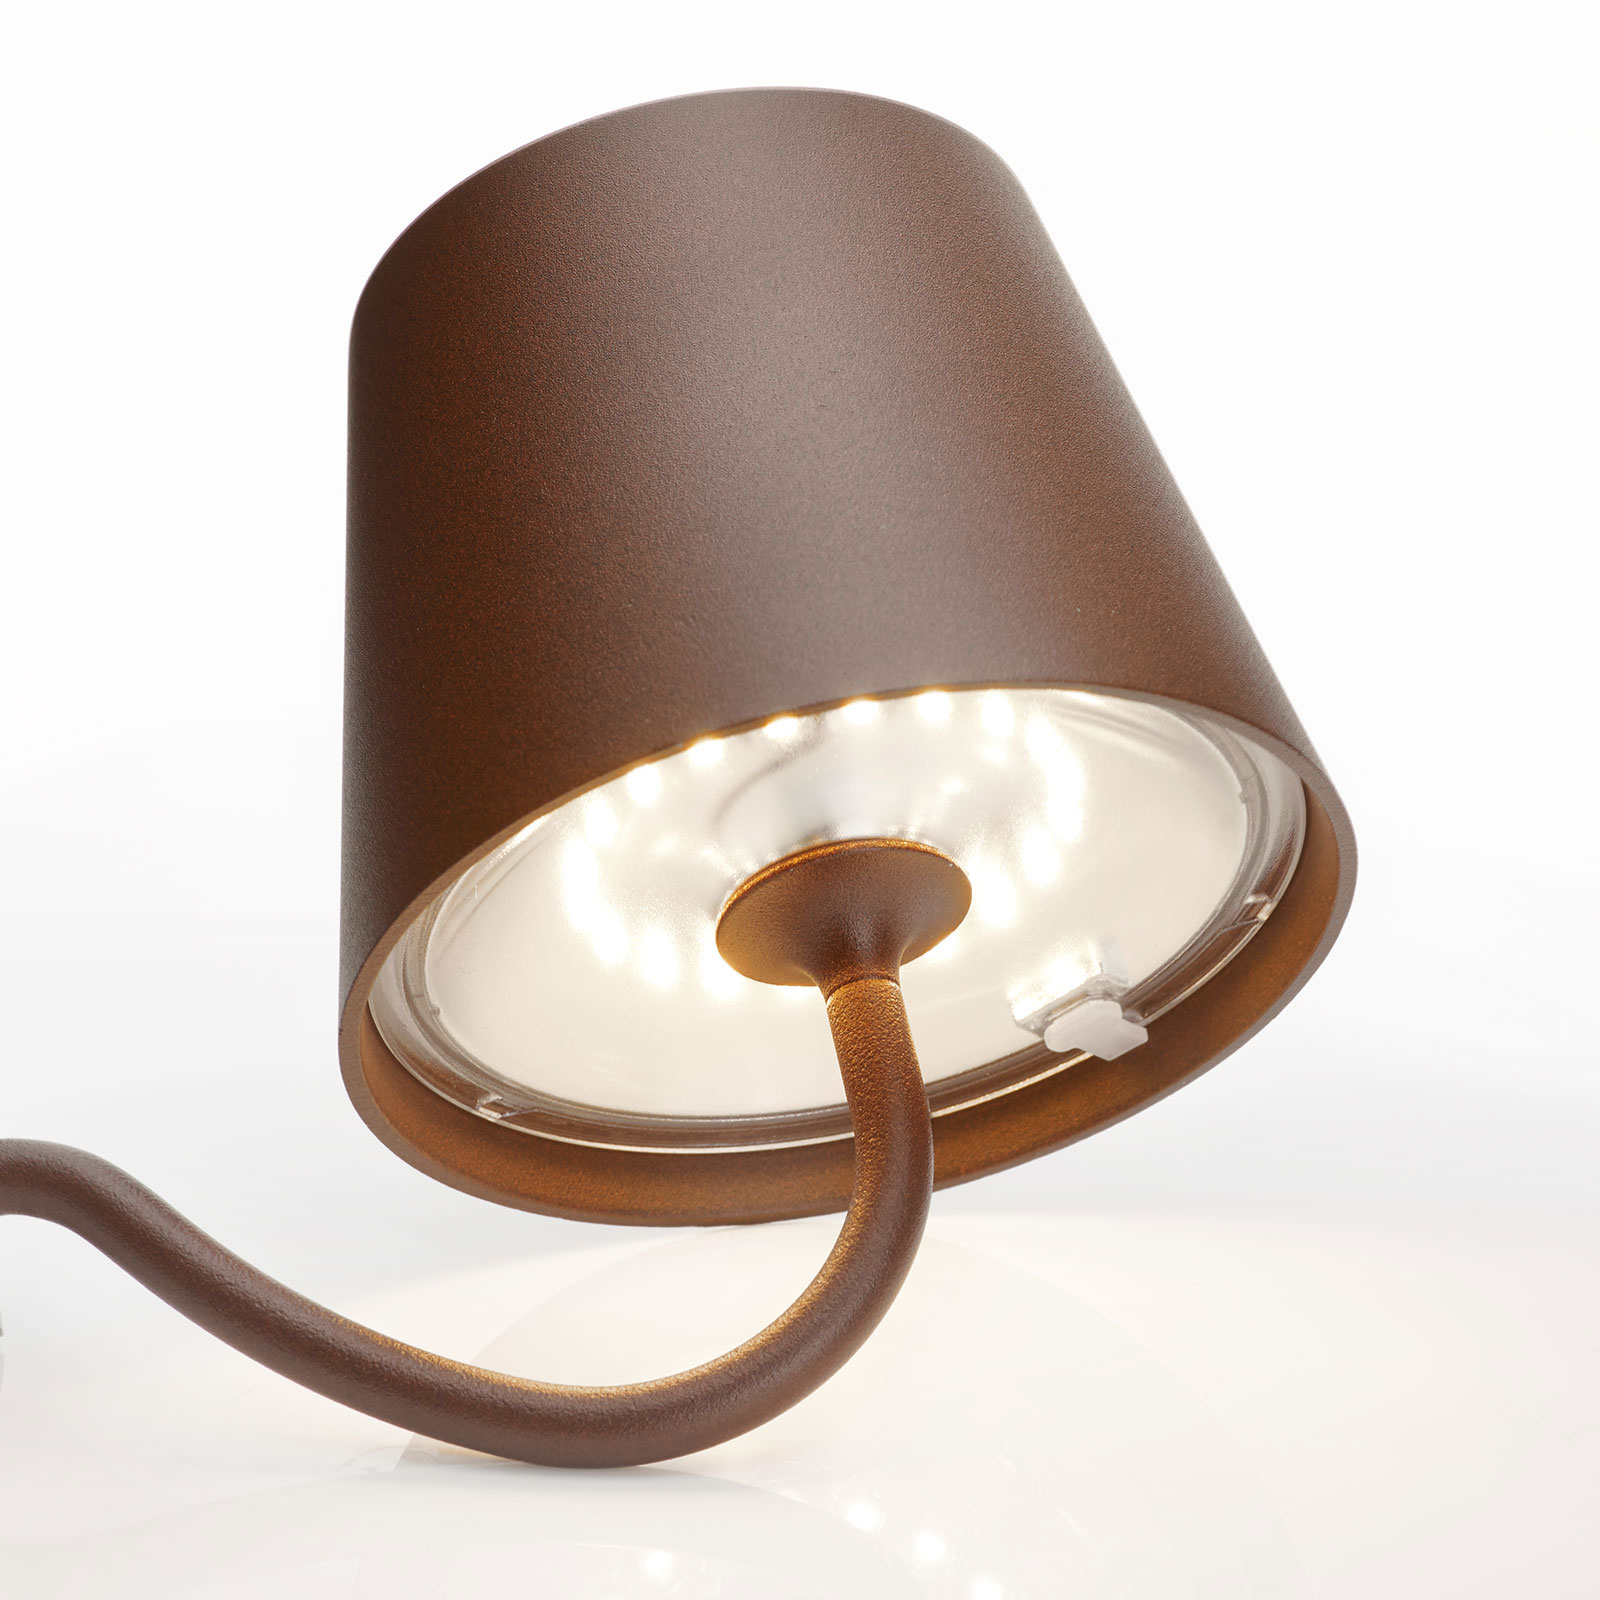 revolutie Knop Stier LED wandlamp Poldina dimbaar, accu en USB-poort | Lampen24.be